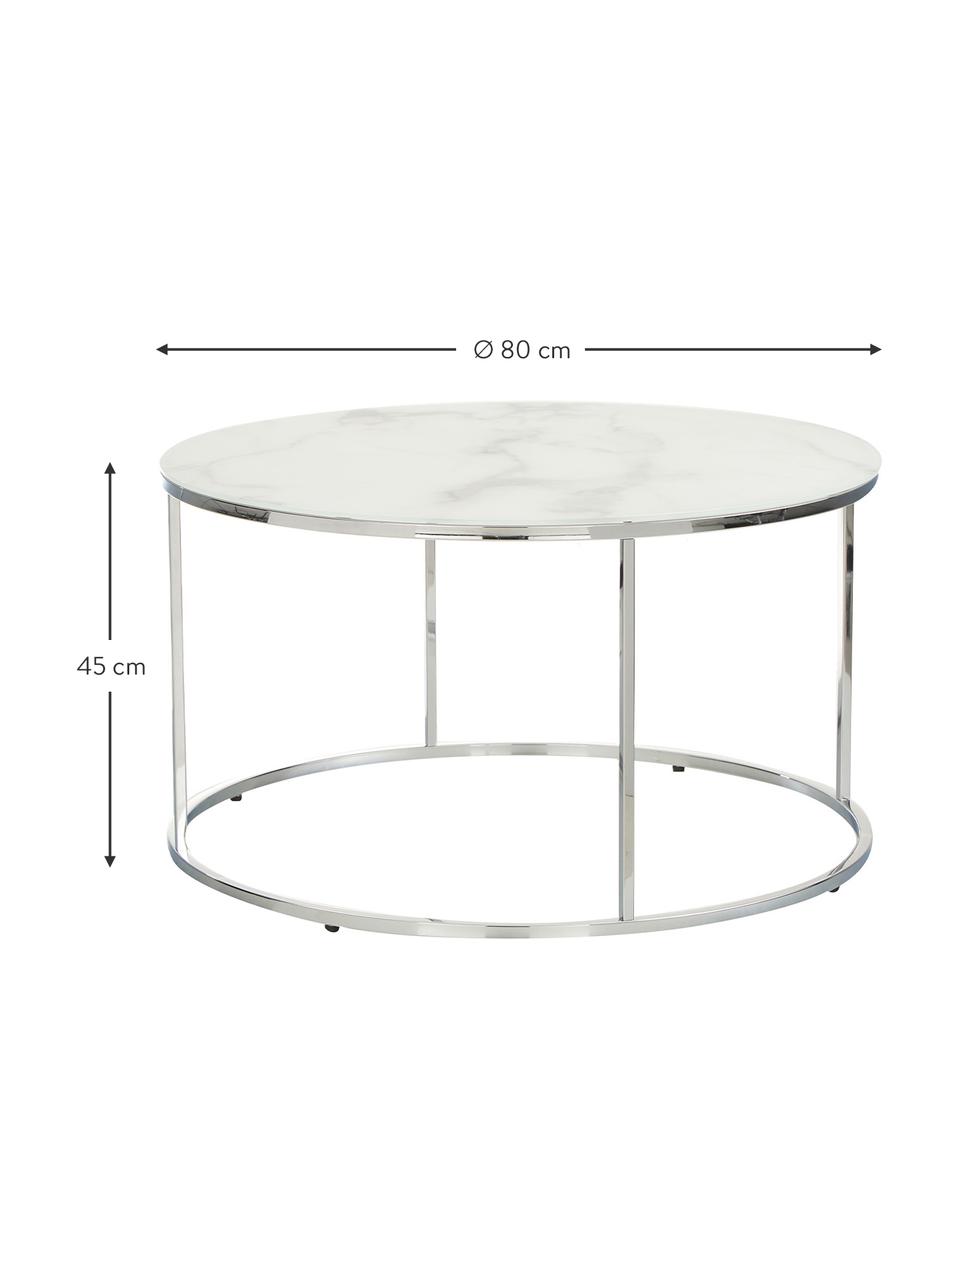 Mesa de centro Antigua, tablero de vidrio en aspecto mármol, Tablero: vidrio estampado con aspe, Estructura: acero cromado, Aspecto mármol blanco, cromo, Ø 80 cm